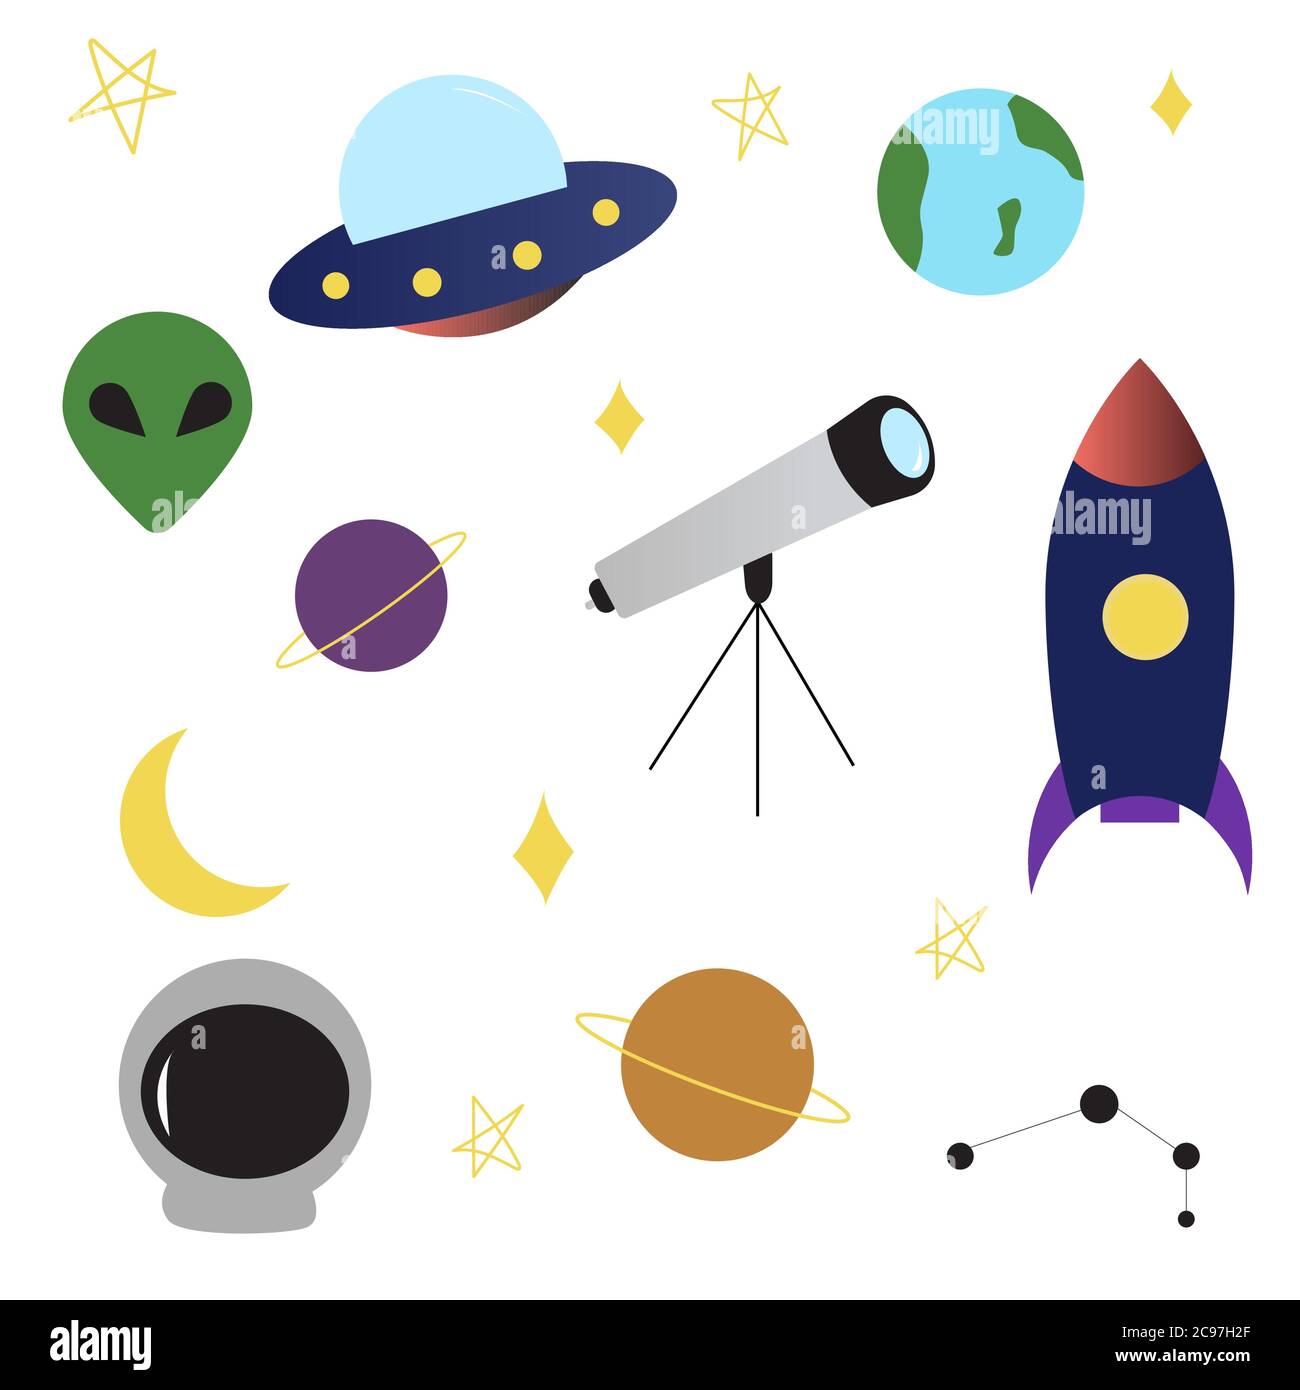 Raum UFO-Objekte setzen Rakete, Alien, Planeten, Erde, Teleskop, Konstellation, Sterne, Mond Raumschiff in flachen Cartoon-Stil Stock Vektor